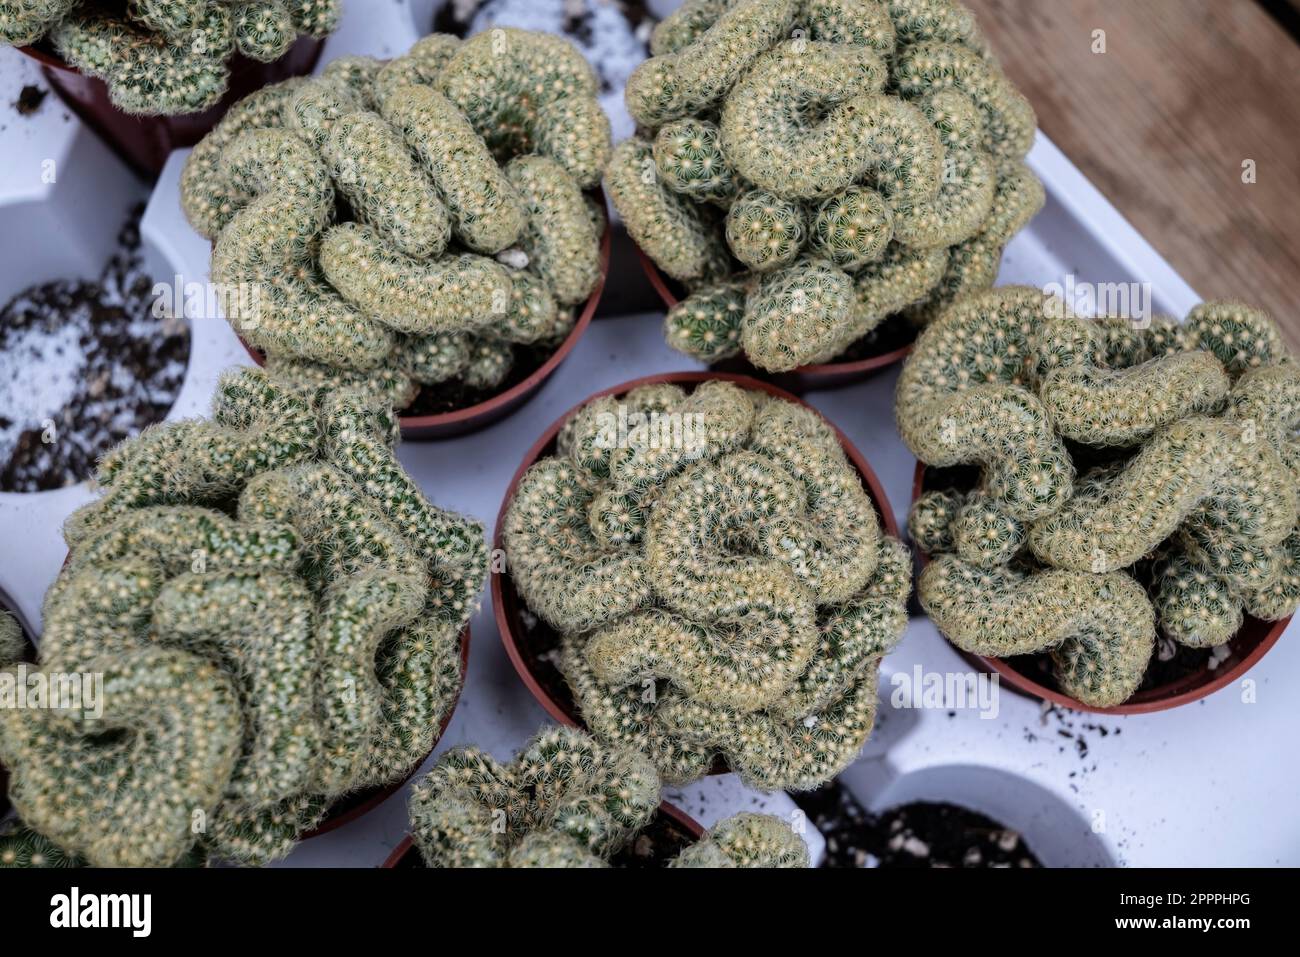 El Cactus Cerebral, también conocido como el cactus Mammillaria elongata 'Cristata', es nativo del centro de México. Foto de stock